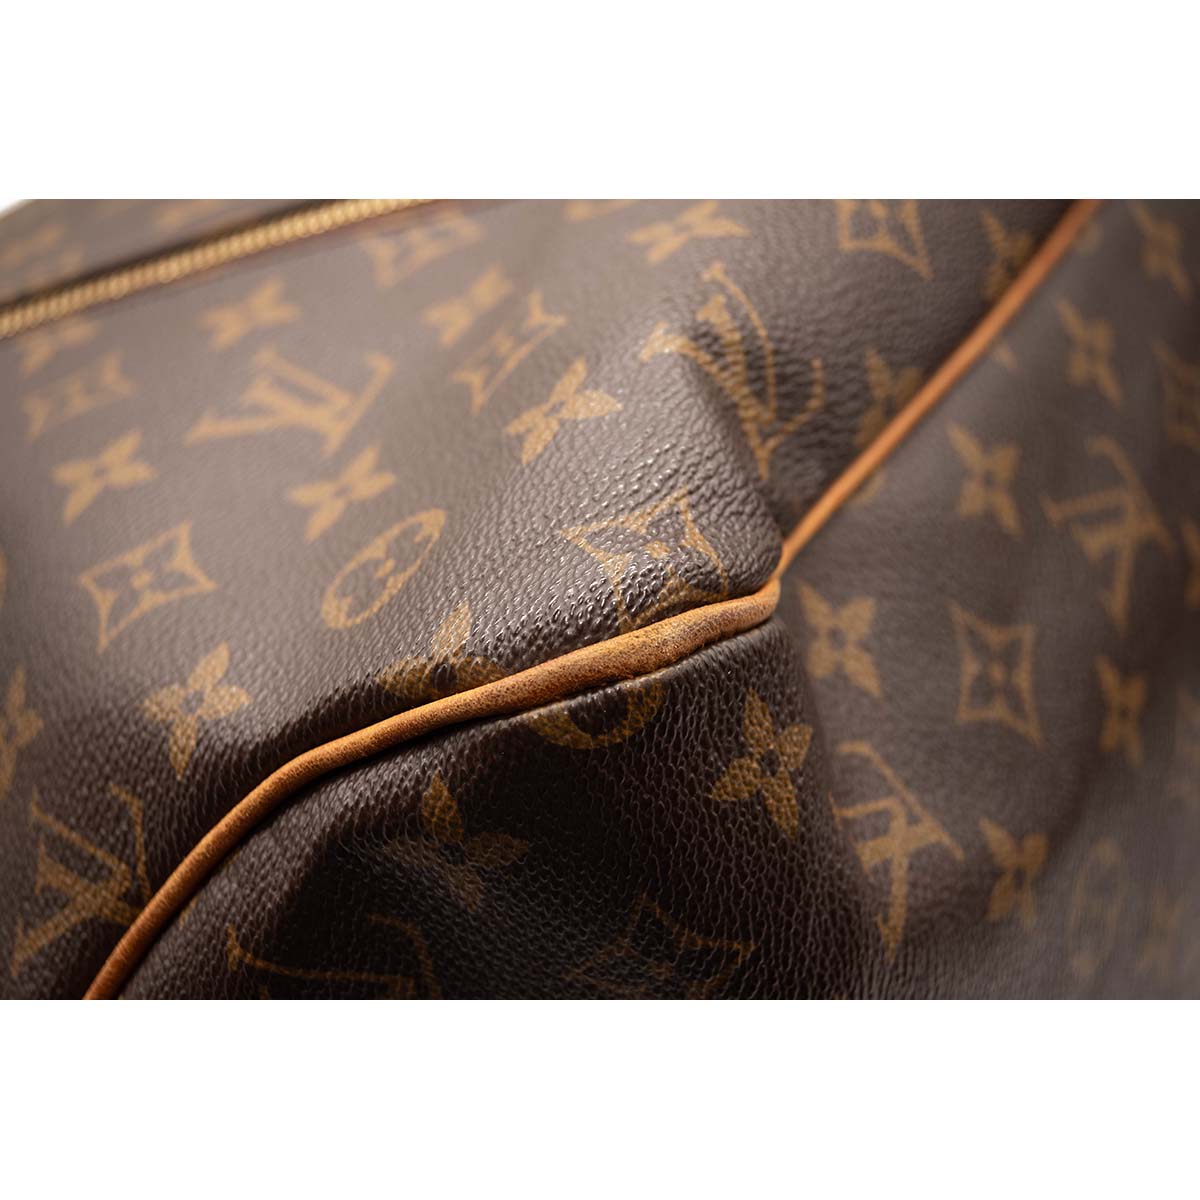 Auth Louis Vuitton Delightful PM Monogram M40352 Corner Leather